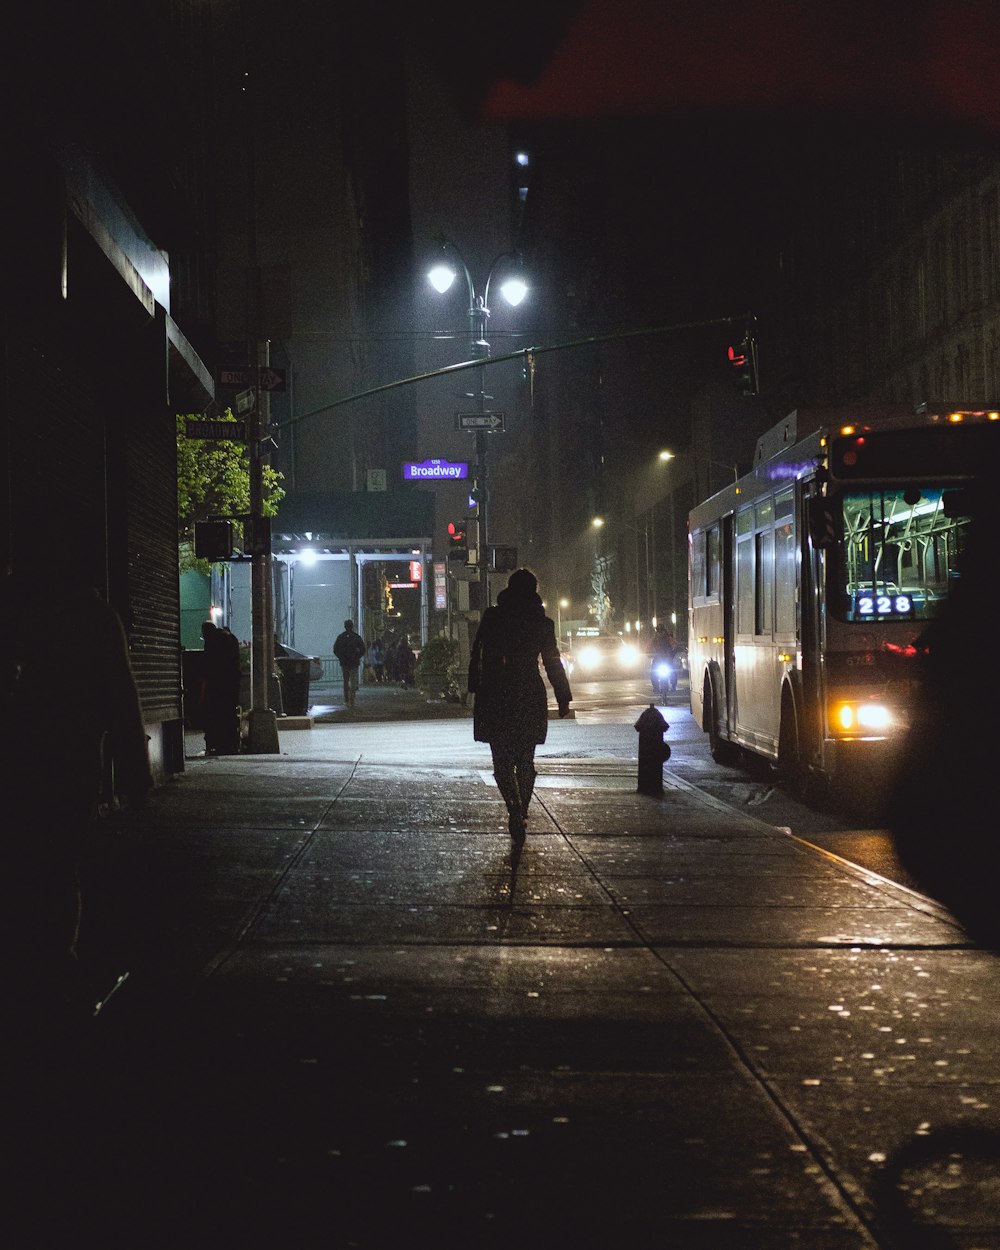 Person, die nachts auf dem Weg in der Nähe von Bussen und Fahrzeugen geht